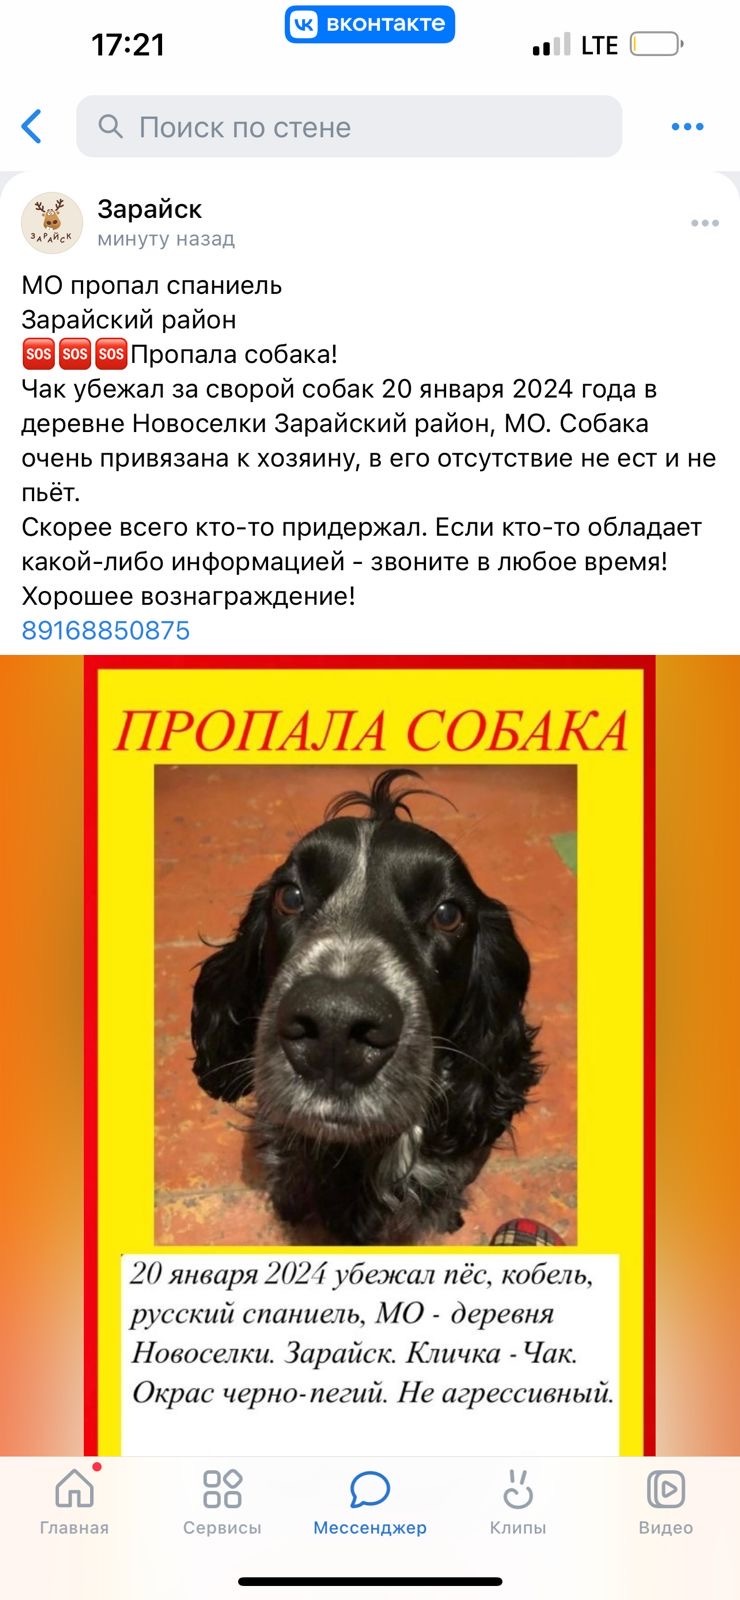 Пропала собака, 46Н-02573, Новосёлки